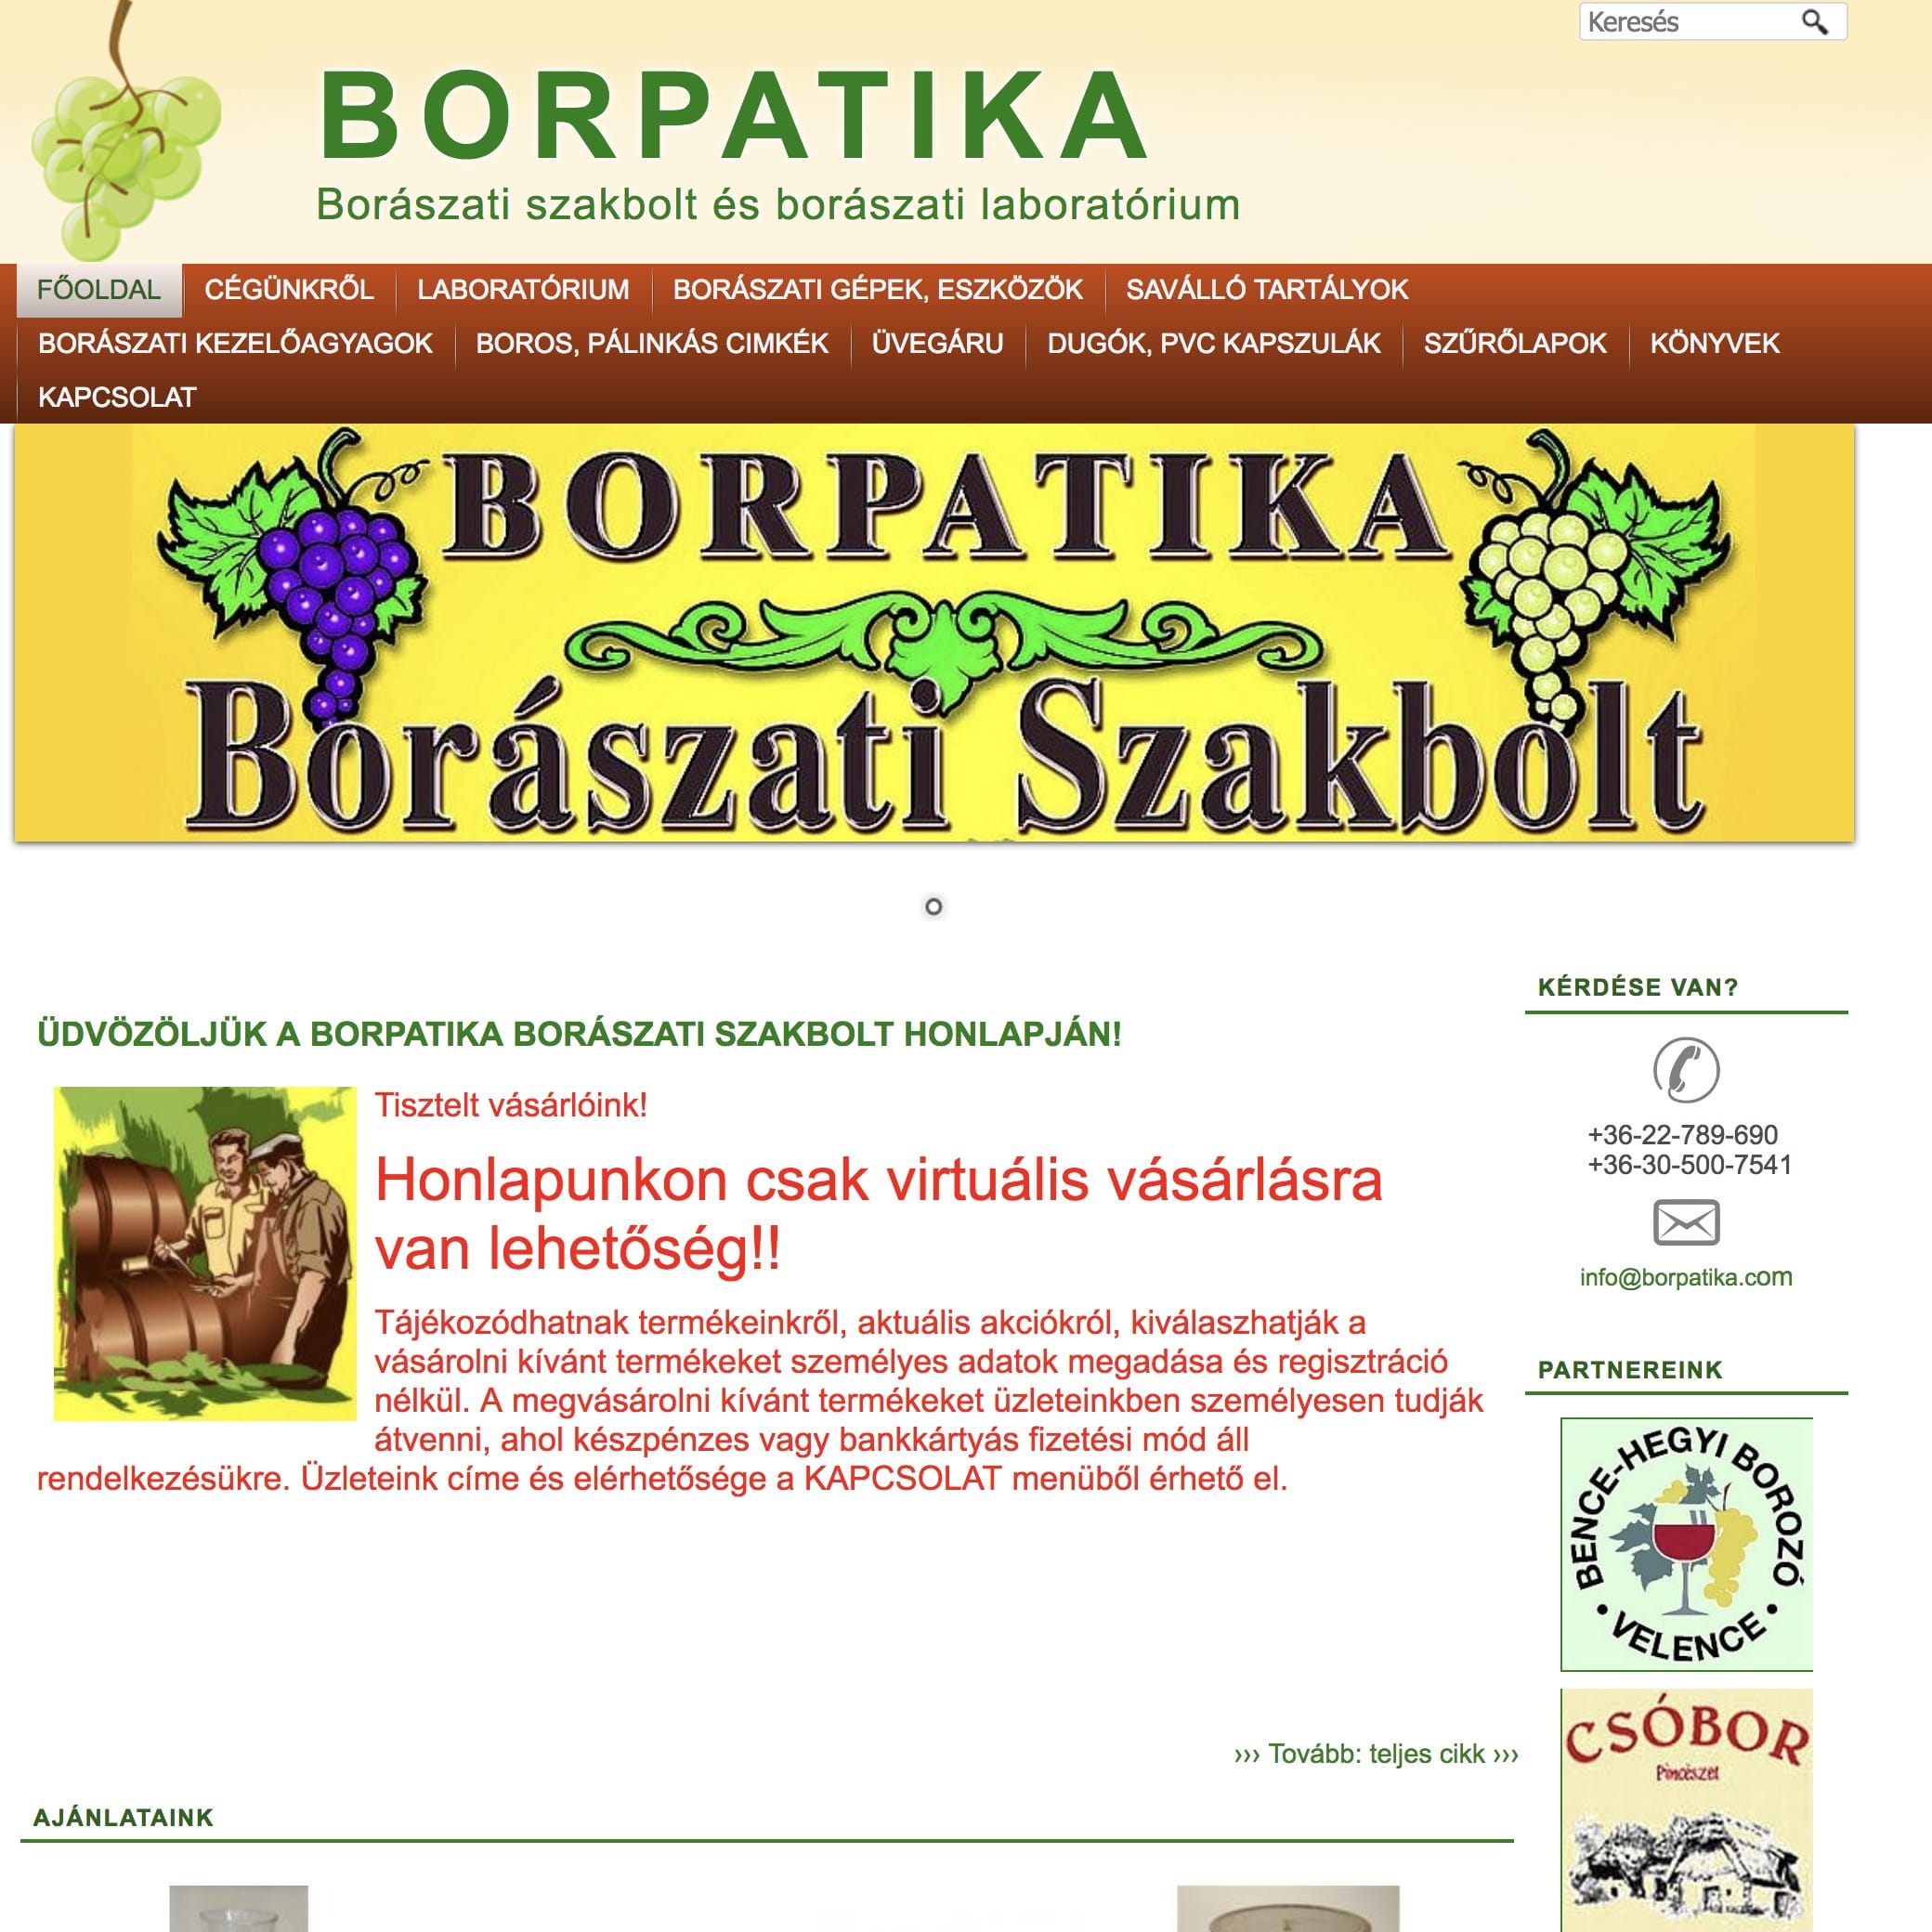 borpatika